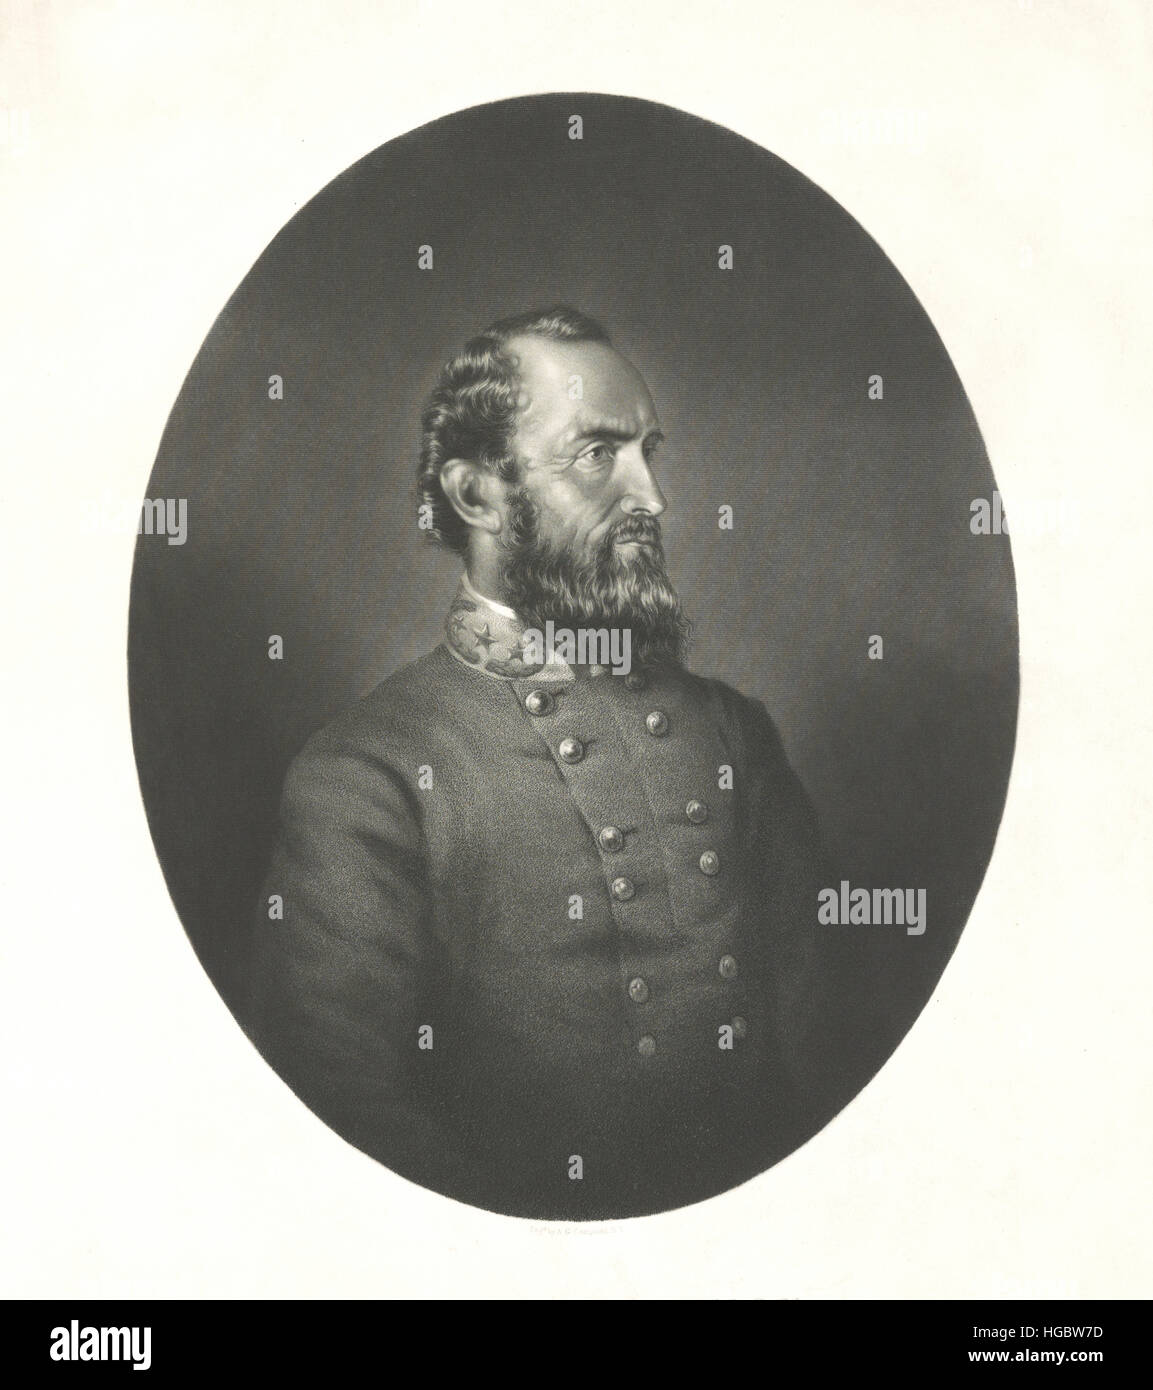 Porträt von Thomas Stonewall Jackson von der Armee der Konföderierten Staaten. Stockfoto